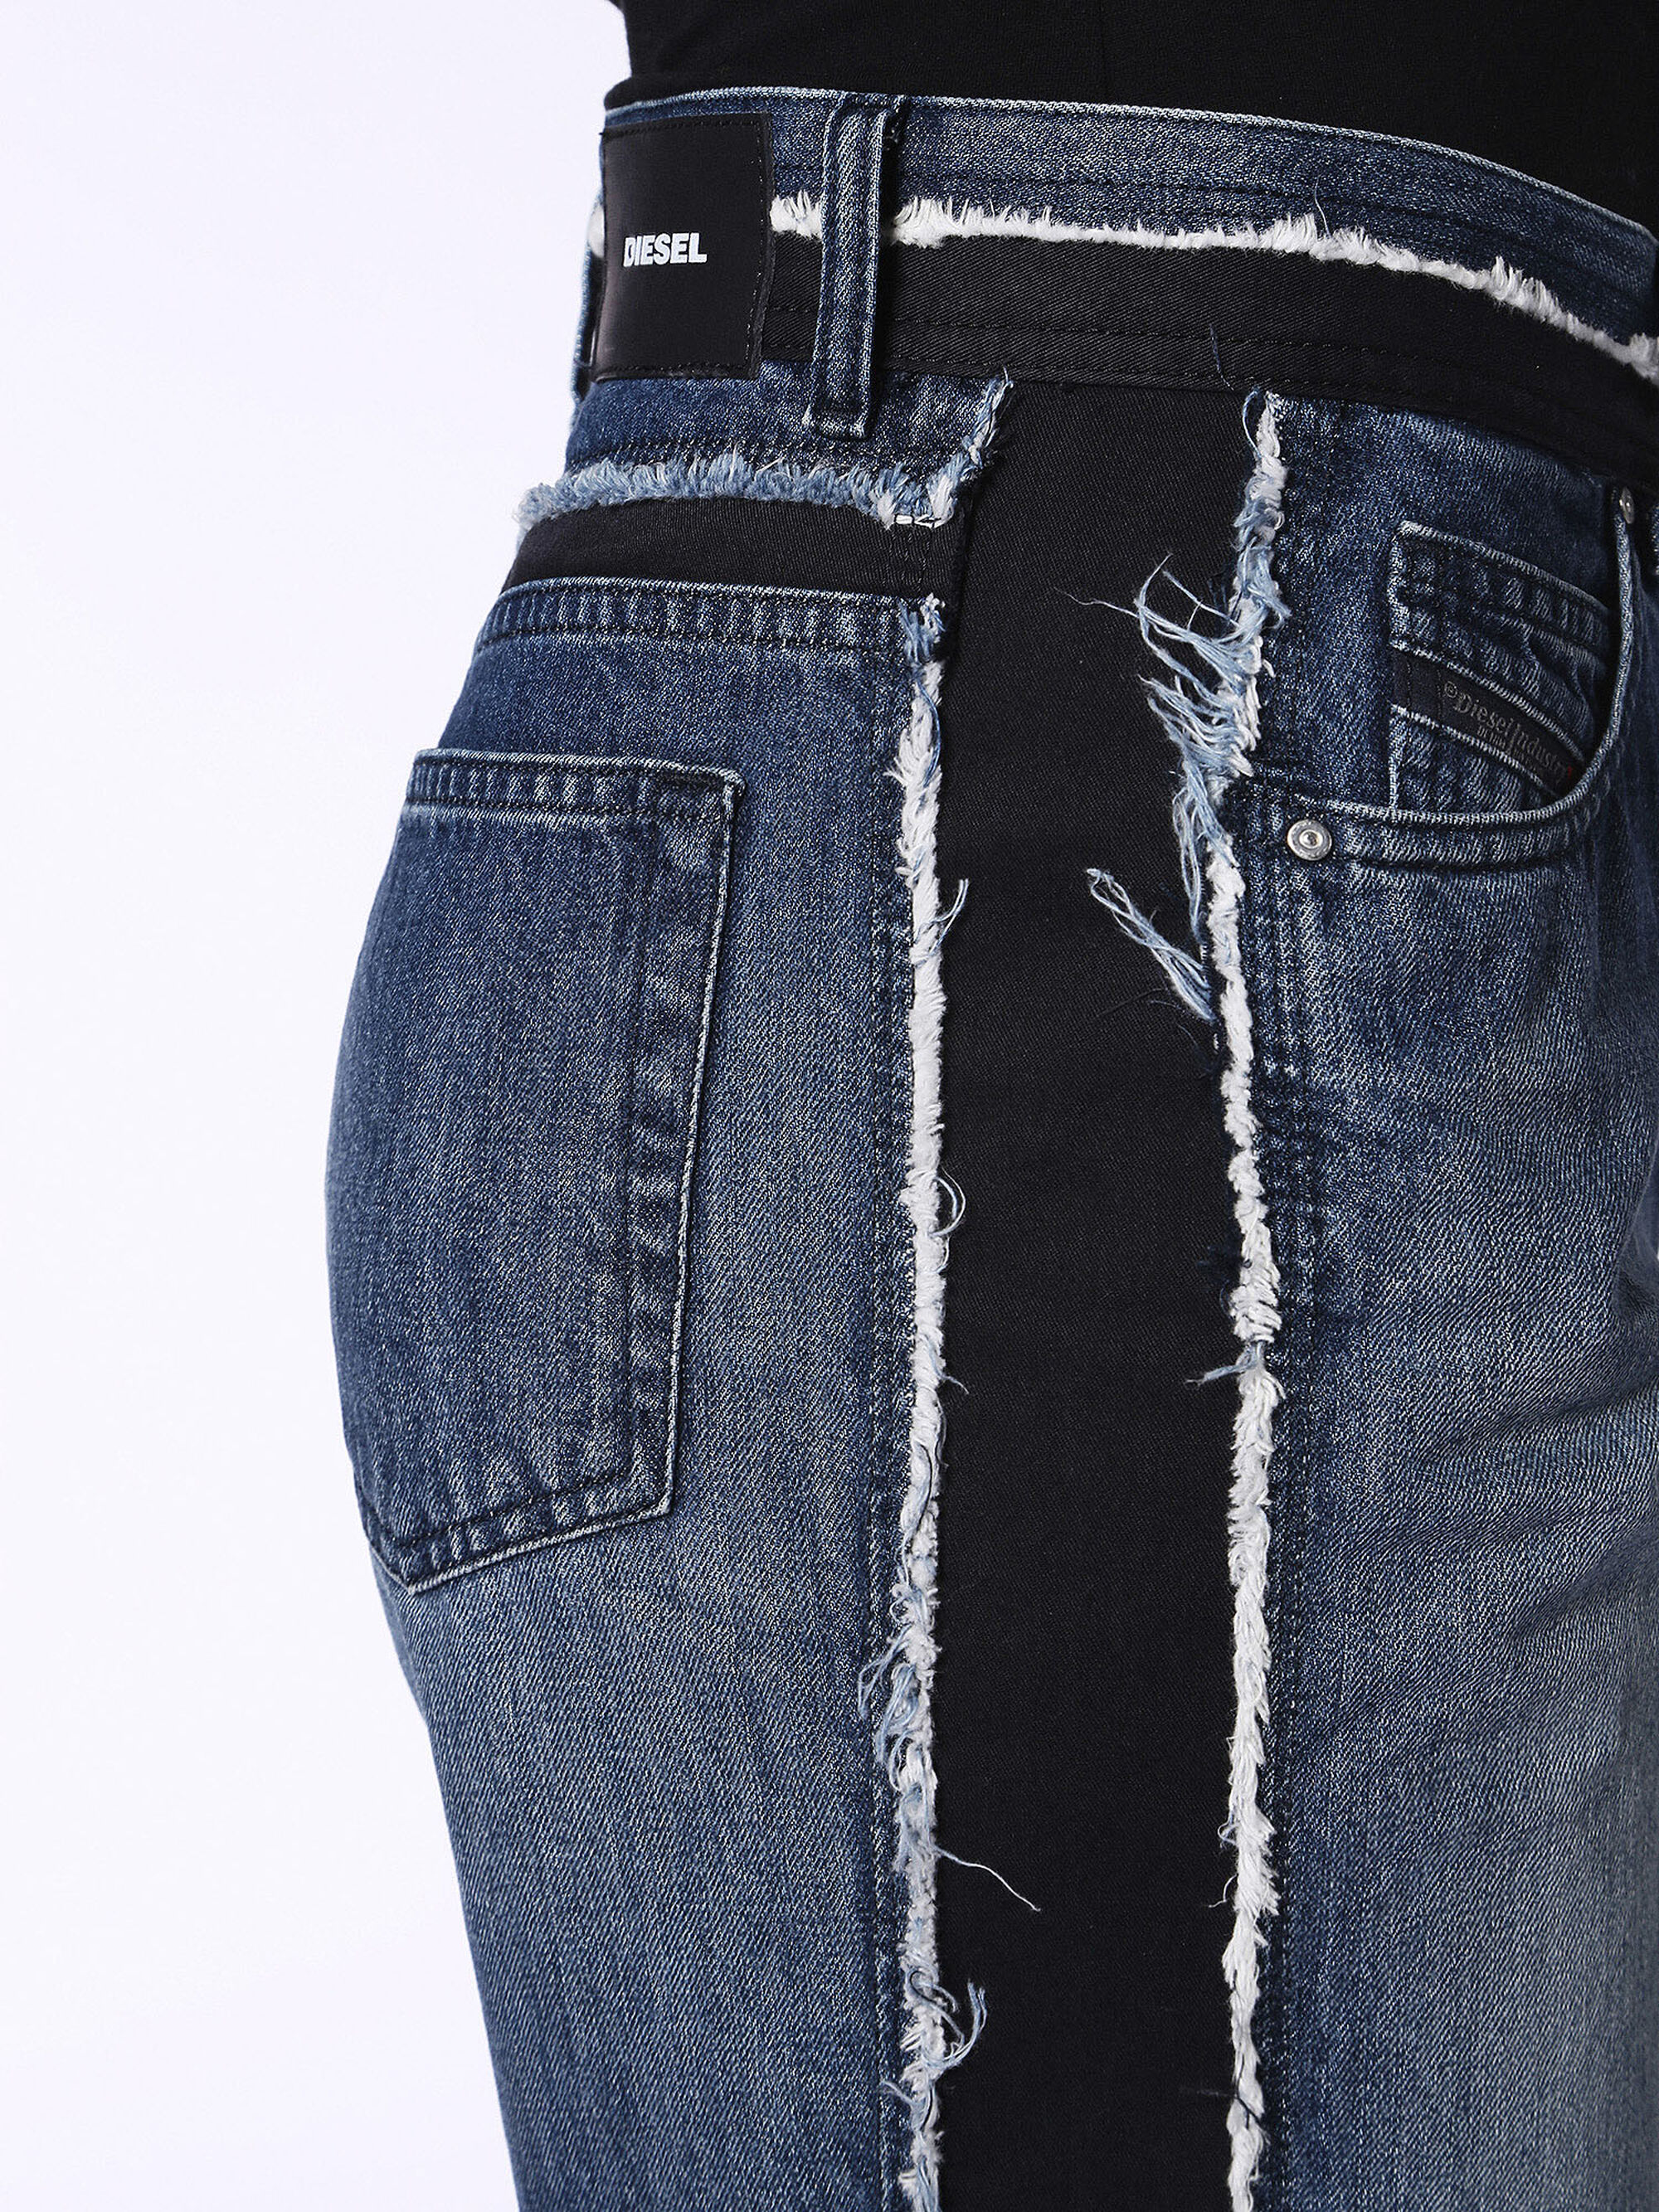 Как расшить джинсы по бокам на размер больше